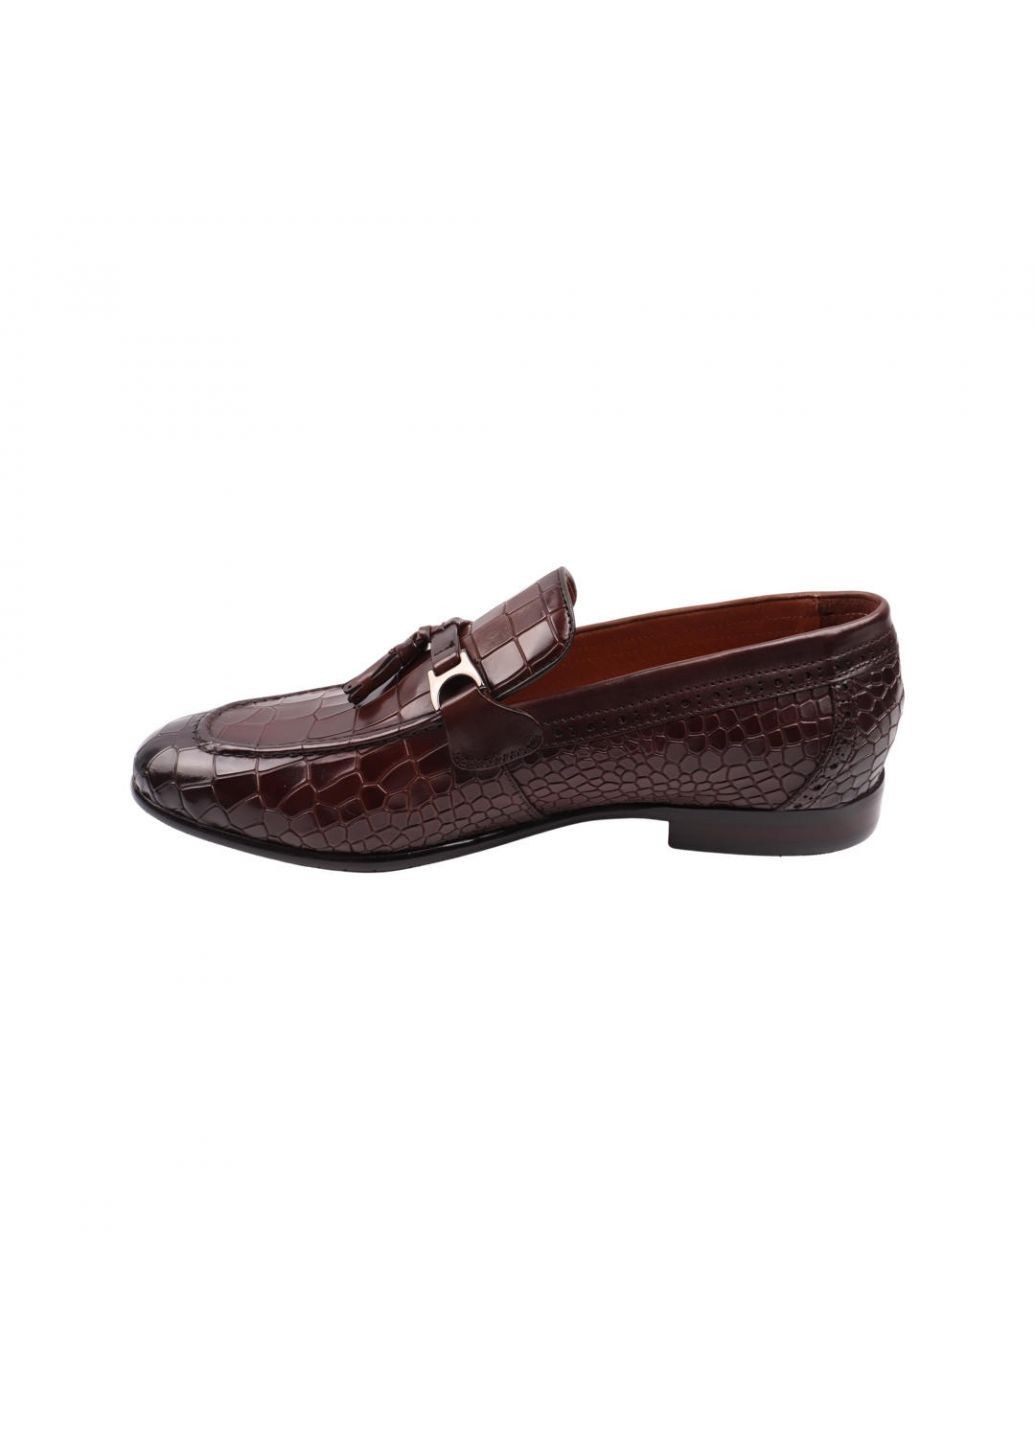 Туфлі чоловічі Lido Marinozi коричневі натуральна шкіра Lido Marinozzi 279-22dt (257439911)